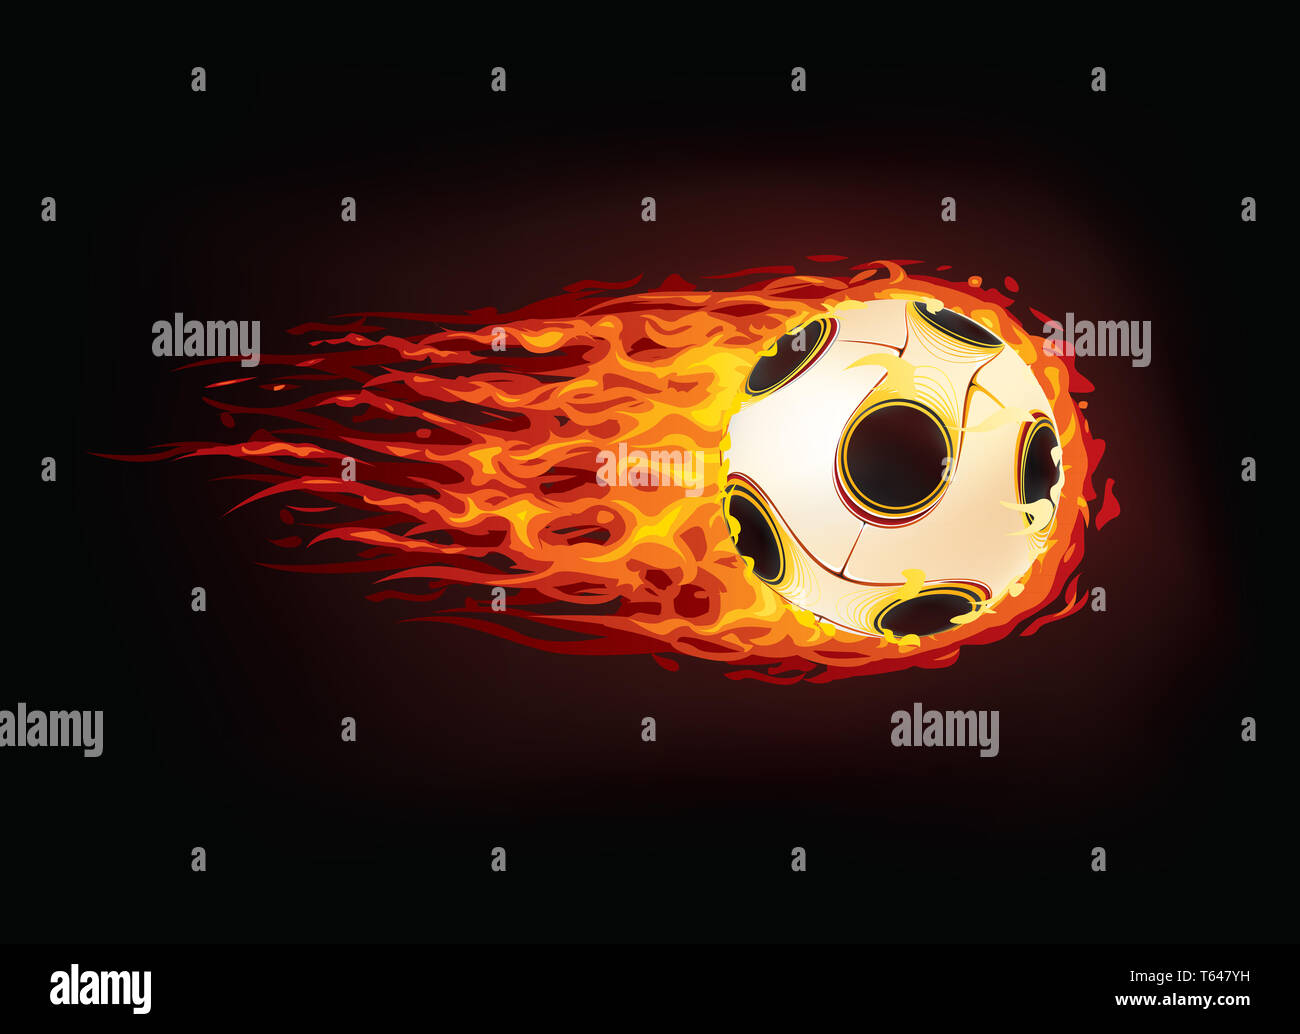 Ballon de soccer Banque D'Images